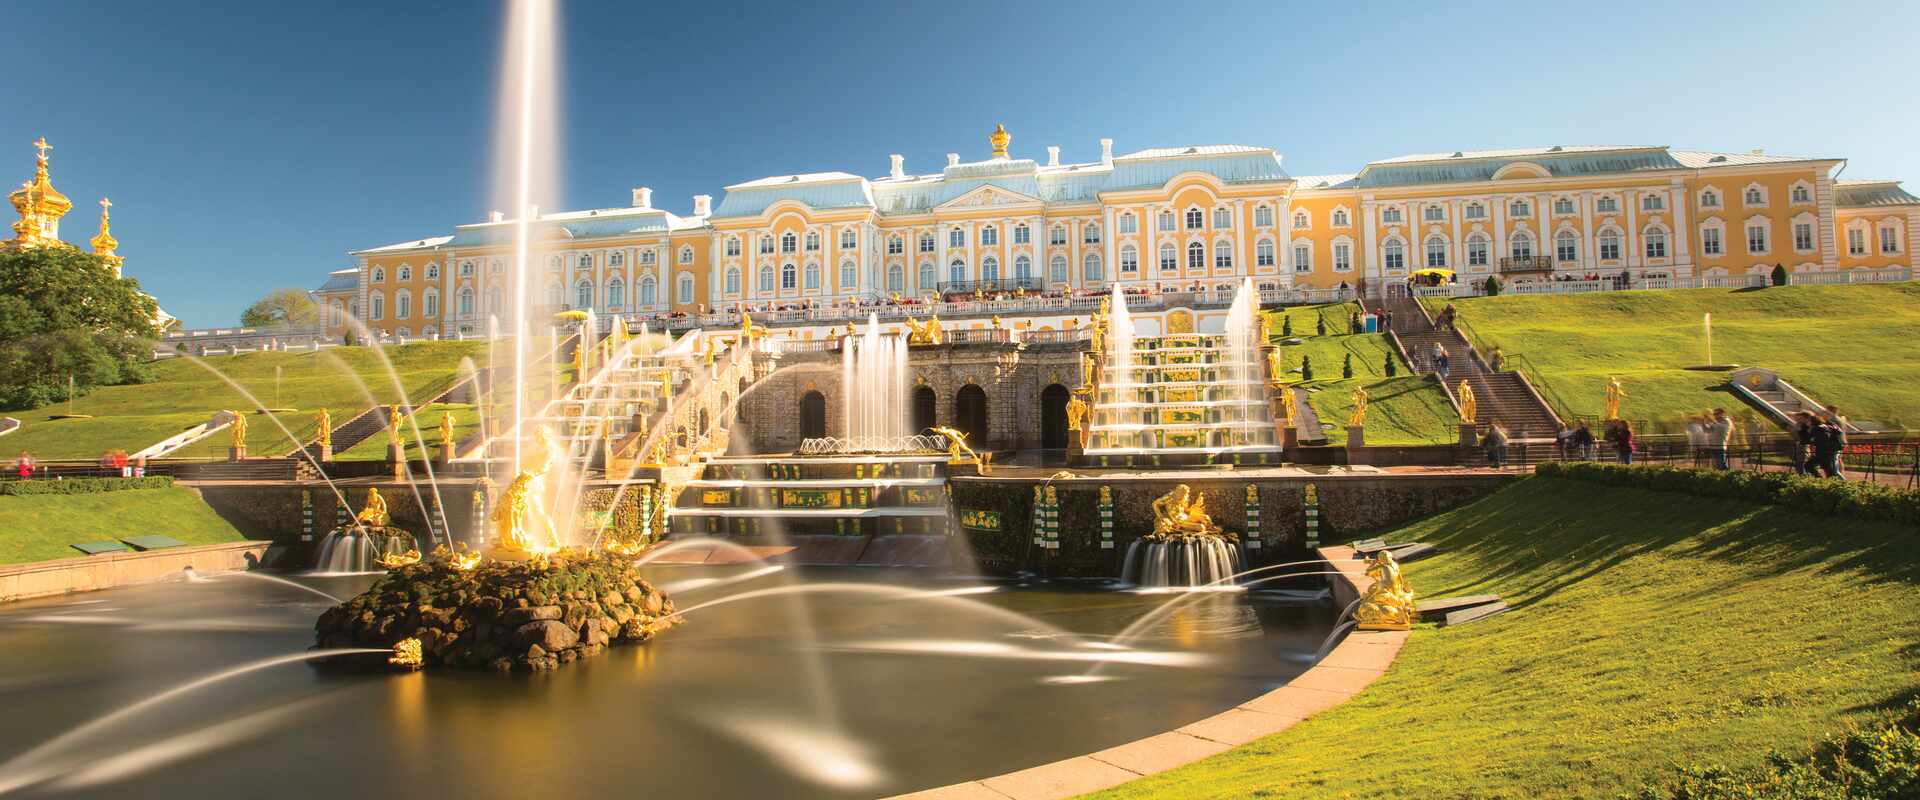 St Petersburg Peterhof, Russia